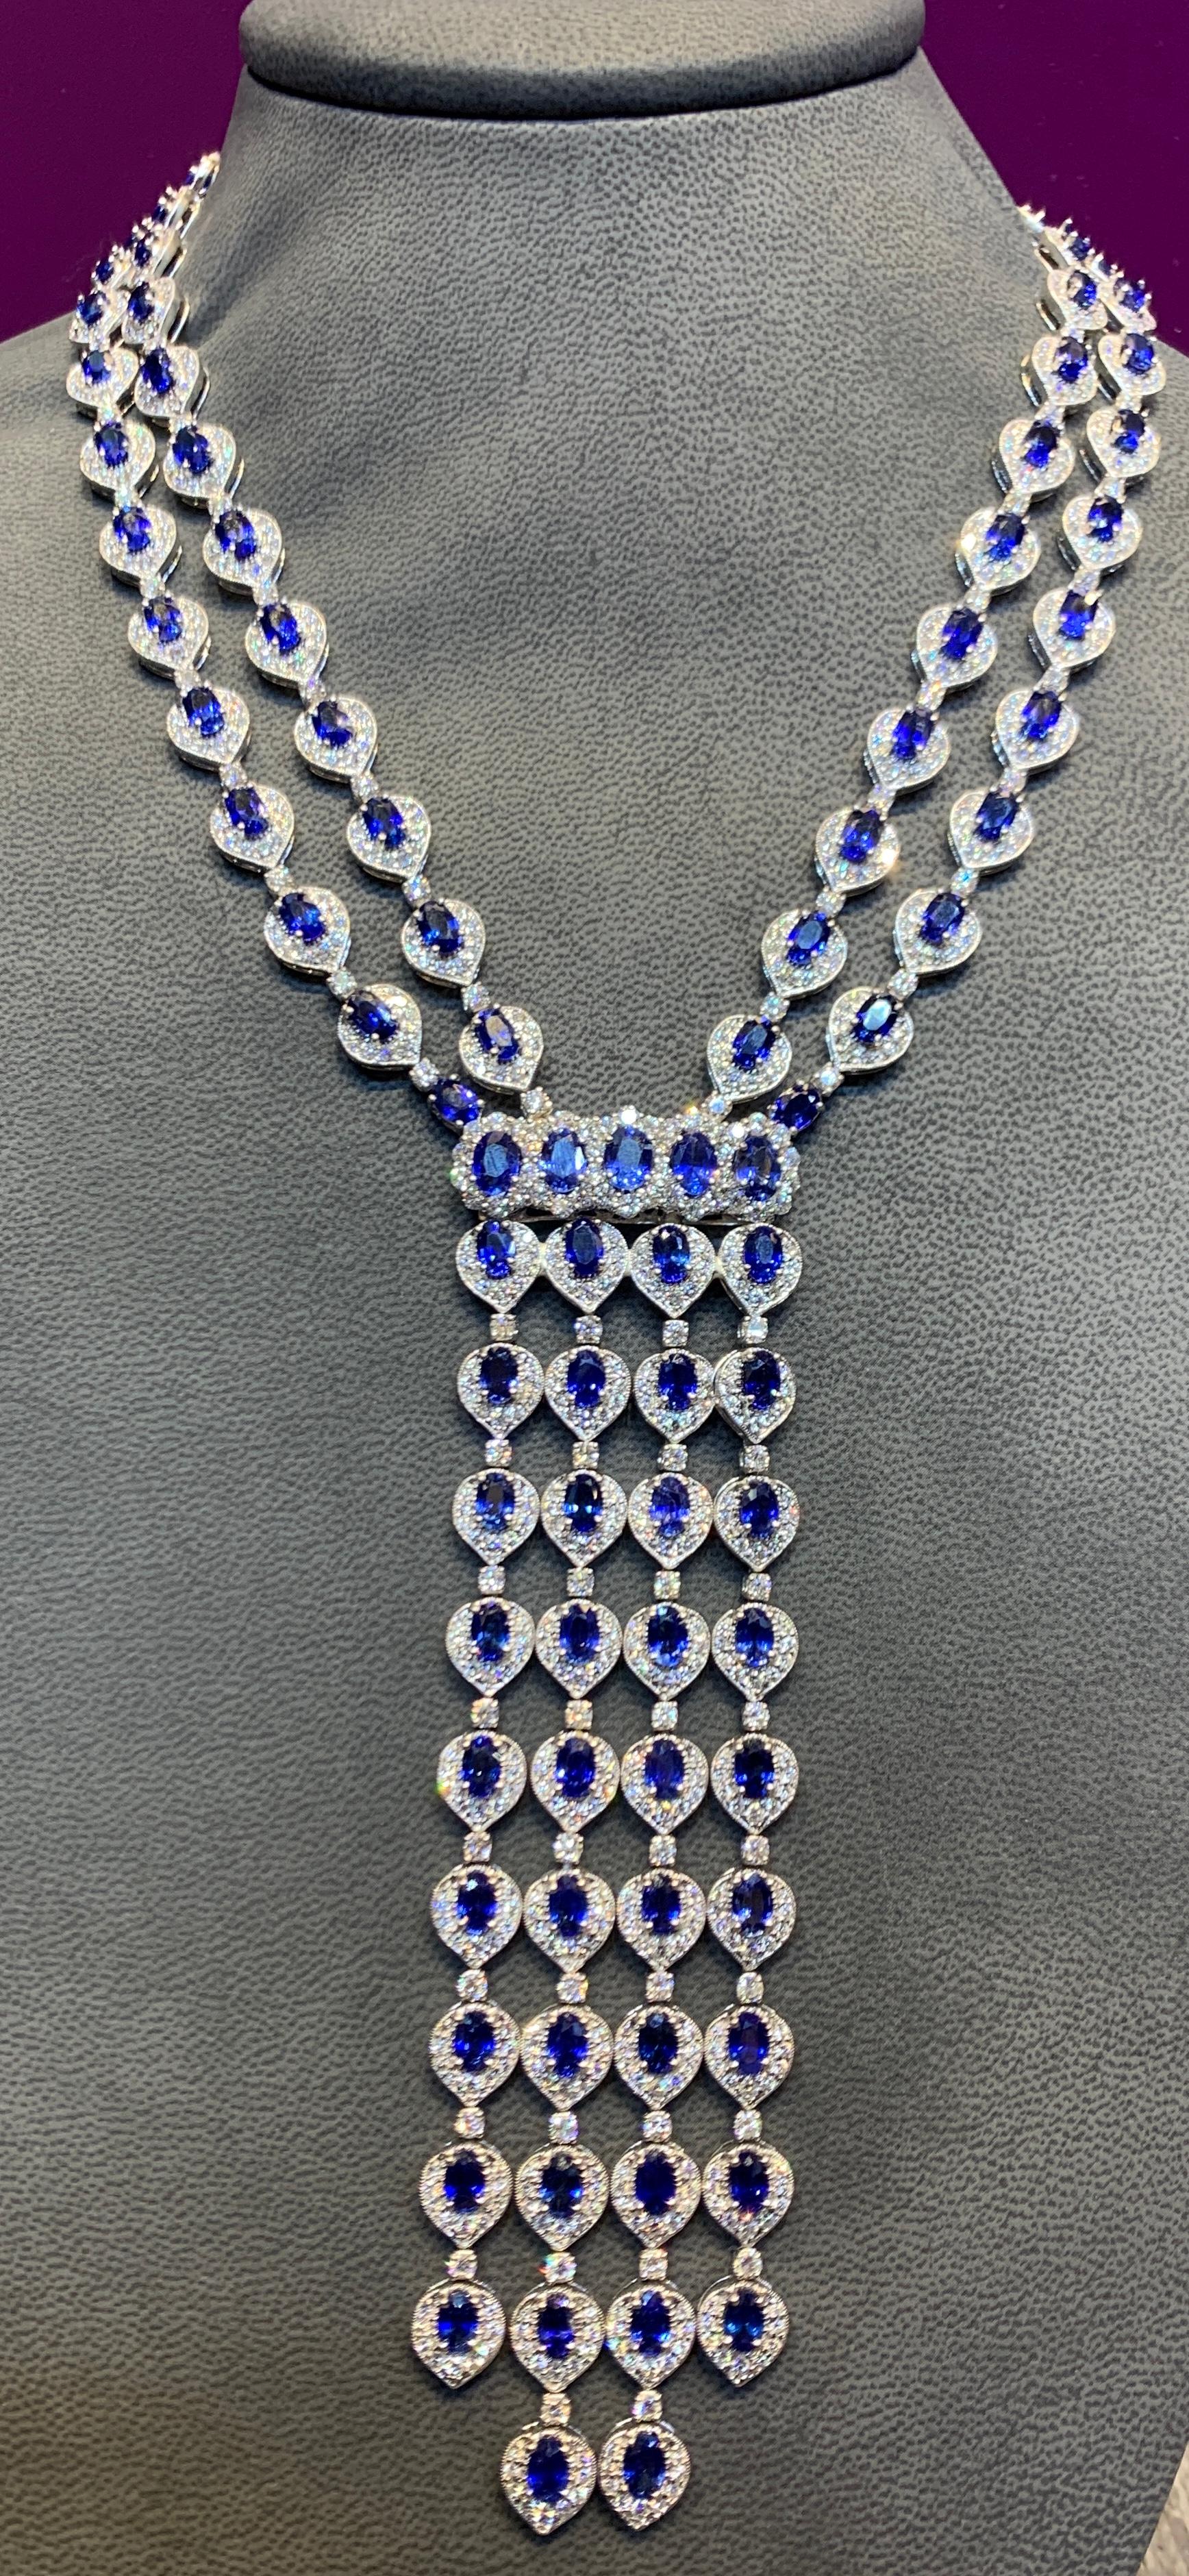 Magnifique collier à pompon en saphir et diamant

Environ 77 carats de saphirs de taille ovale et 28 carats de diamants de taille ronde, le tout serti dans du platine. 

Dimensions : glands intérieurs : 5